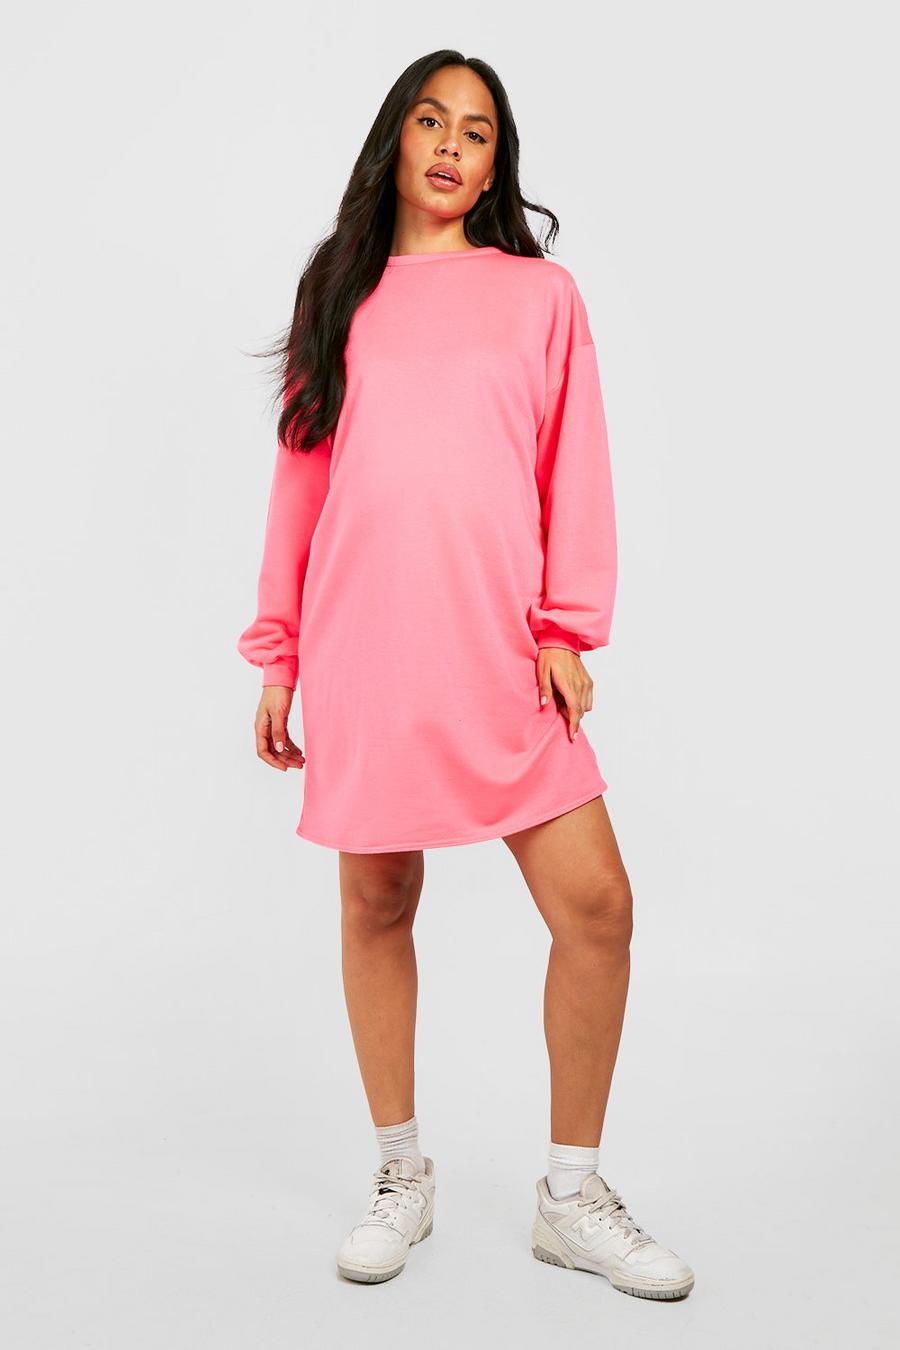 Hot pink Maternity Oversized Sweater Dress